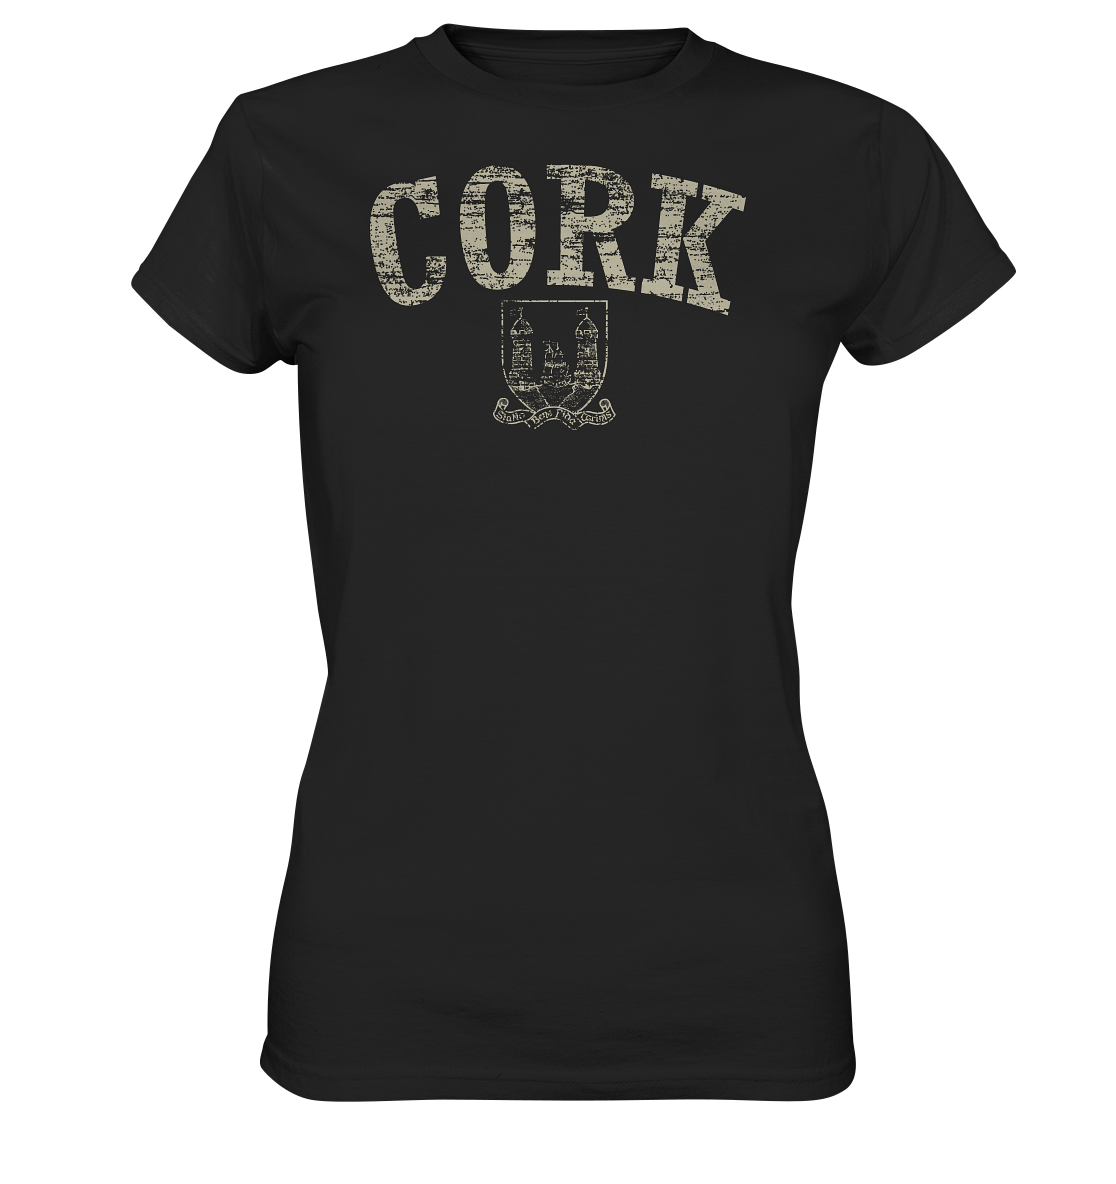 "Cork - Statio Bene Fida Carinis" - Ladies Premium Shirt